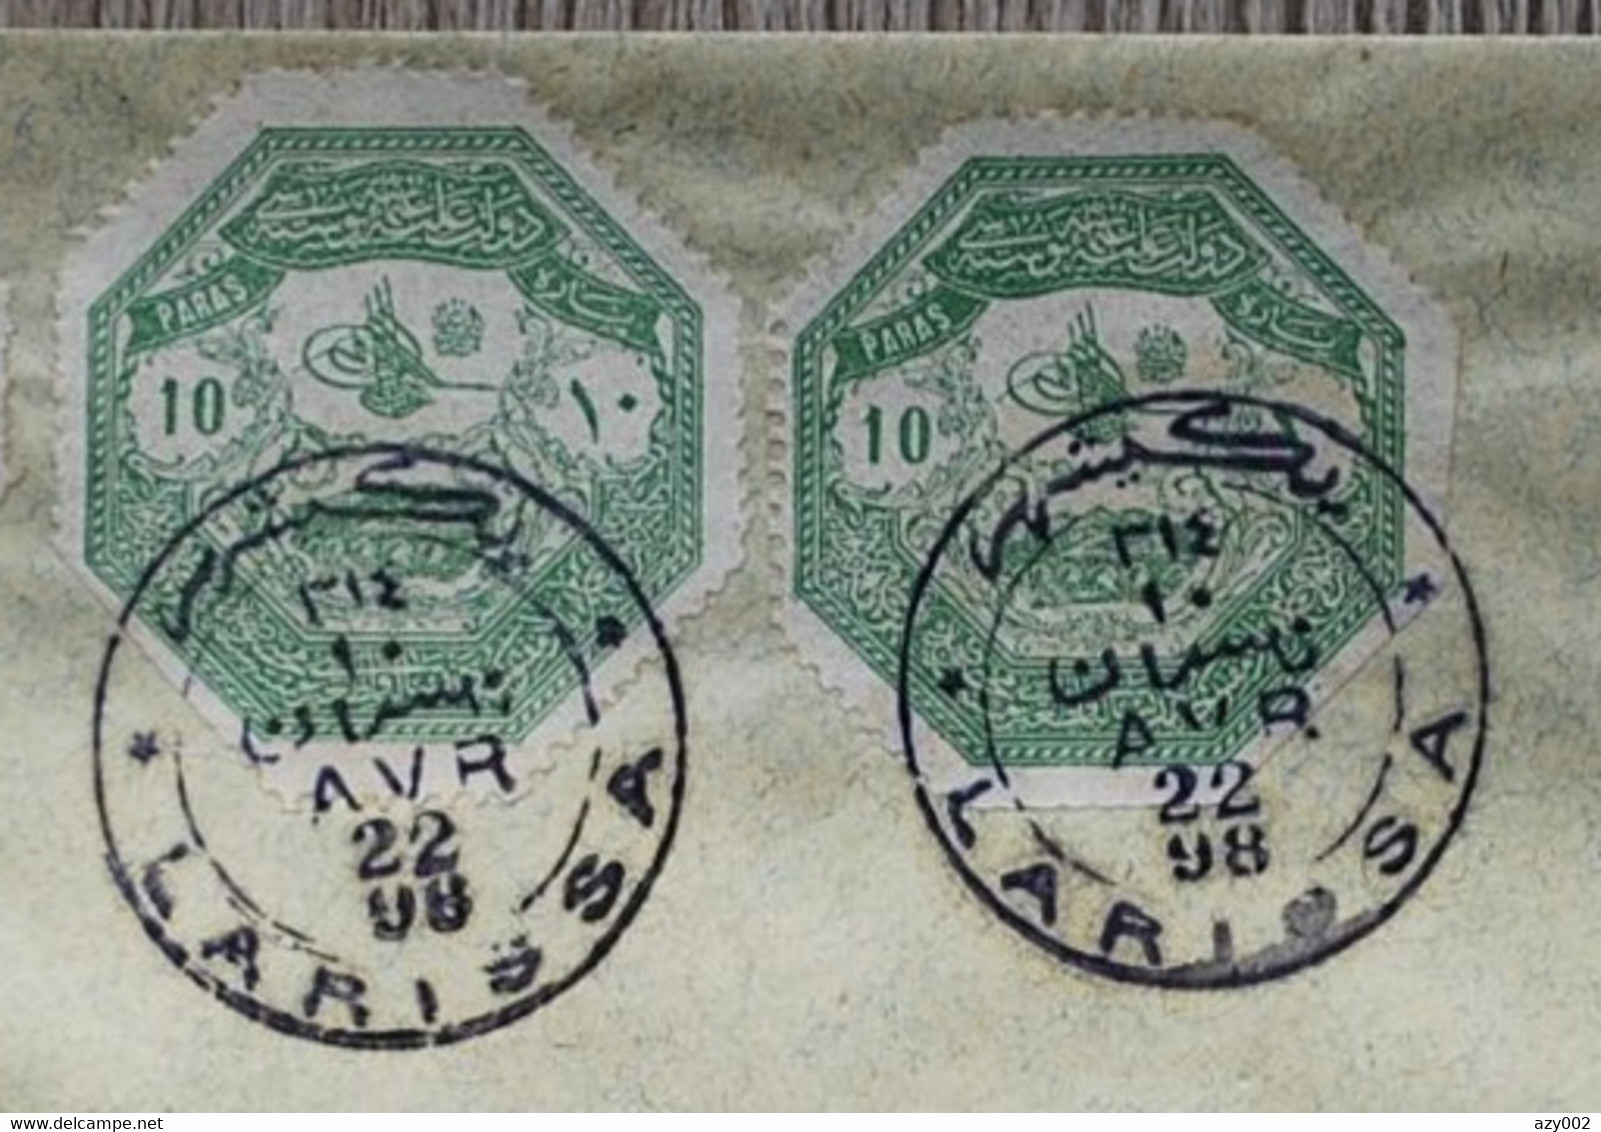 GRECE -THESSALIE 1898 - Timbres N°1 X2 ET N°2 Sur Enveloppe  Oblitération De LARISSA +++ Beau Document - Non Circulé +++ - Local Post Stamps